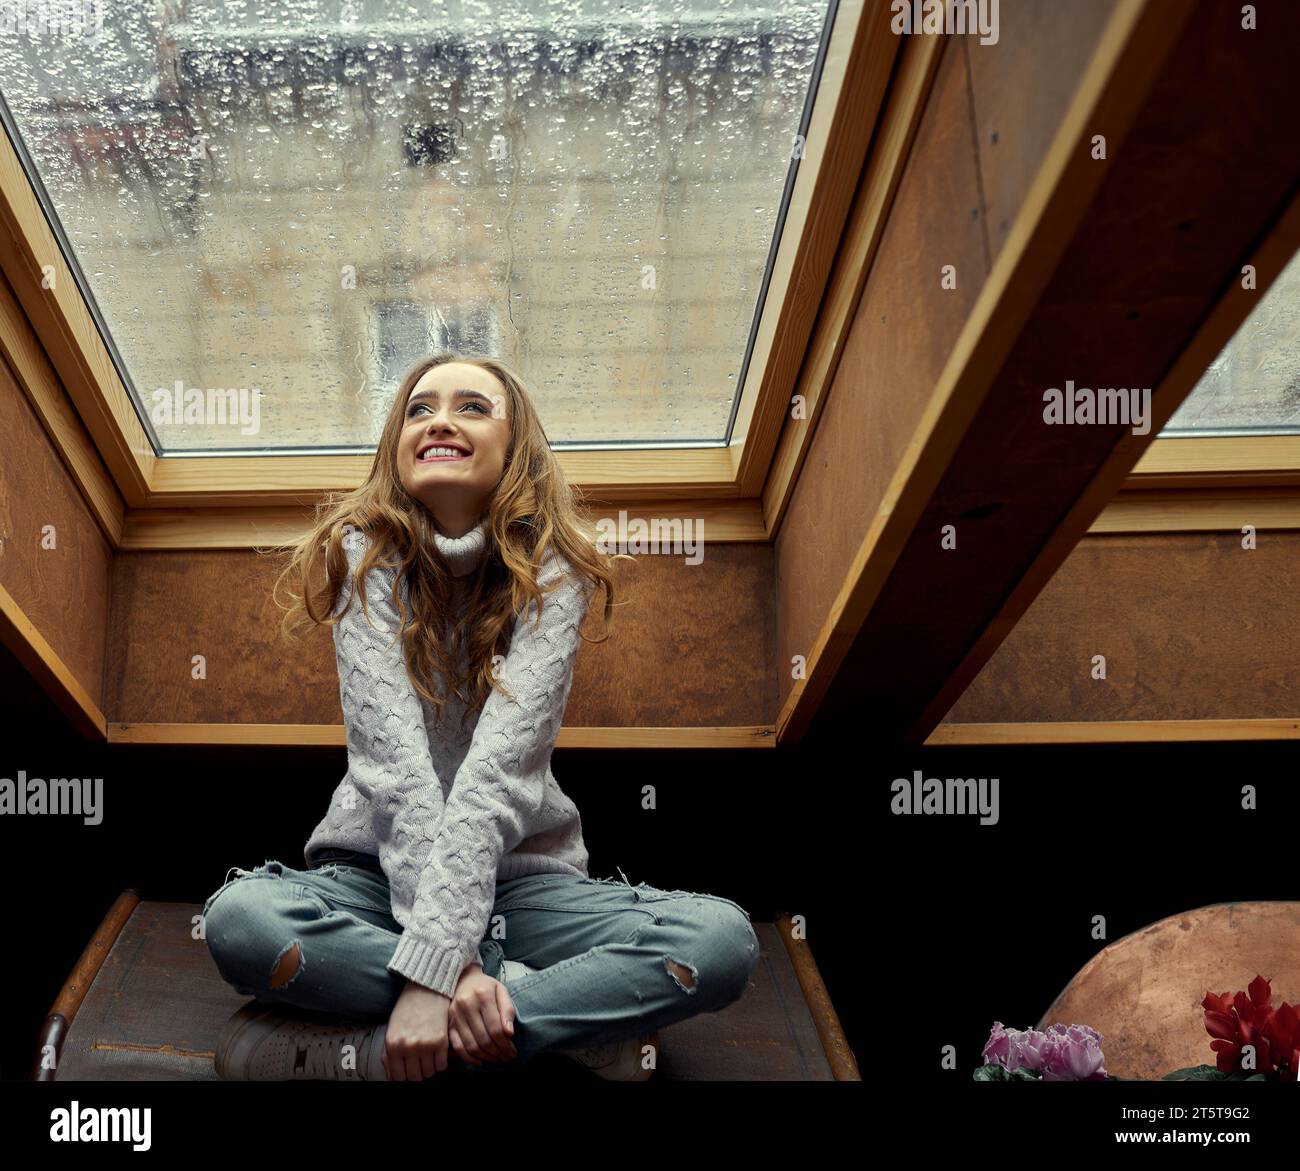 La giovane ragazza è felice della pioggia fuori dalla finestra, seduta nella sua accogliente stanza sotto la finestra nel soffitto, su cui scorre la pioggia. Concetto di io Foto Stock